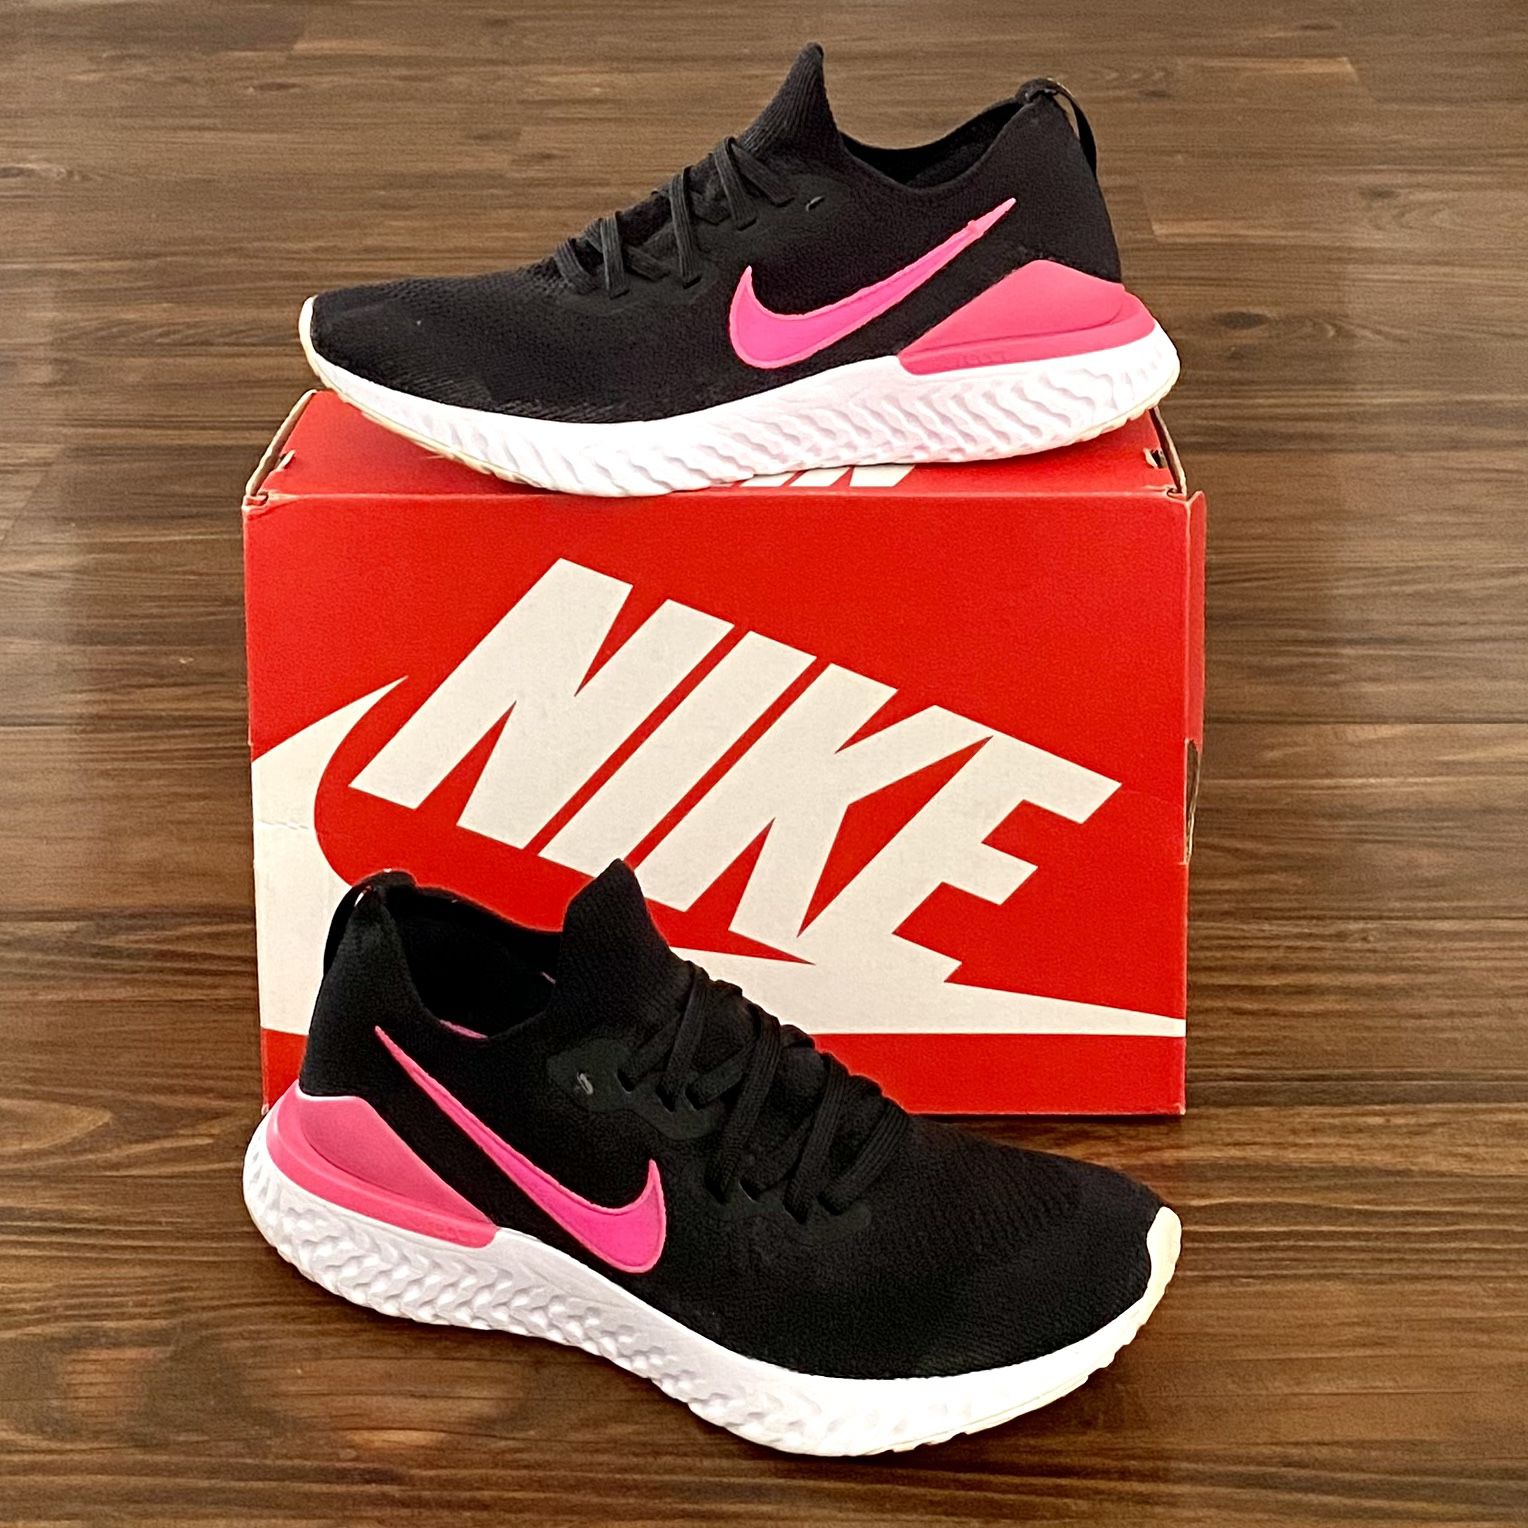 Nike Epic React FlyKnit 2 Black Pink - Women's Size 11 Sale in AZ - OfferUp